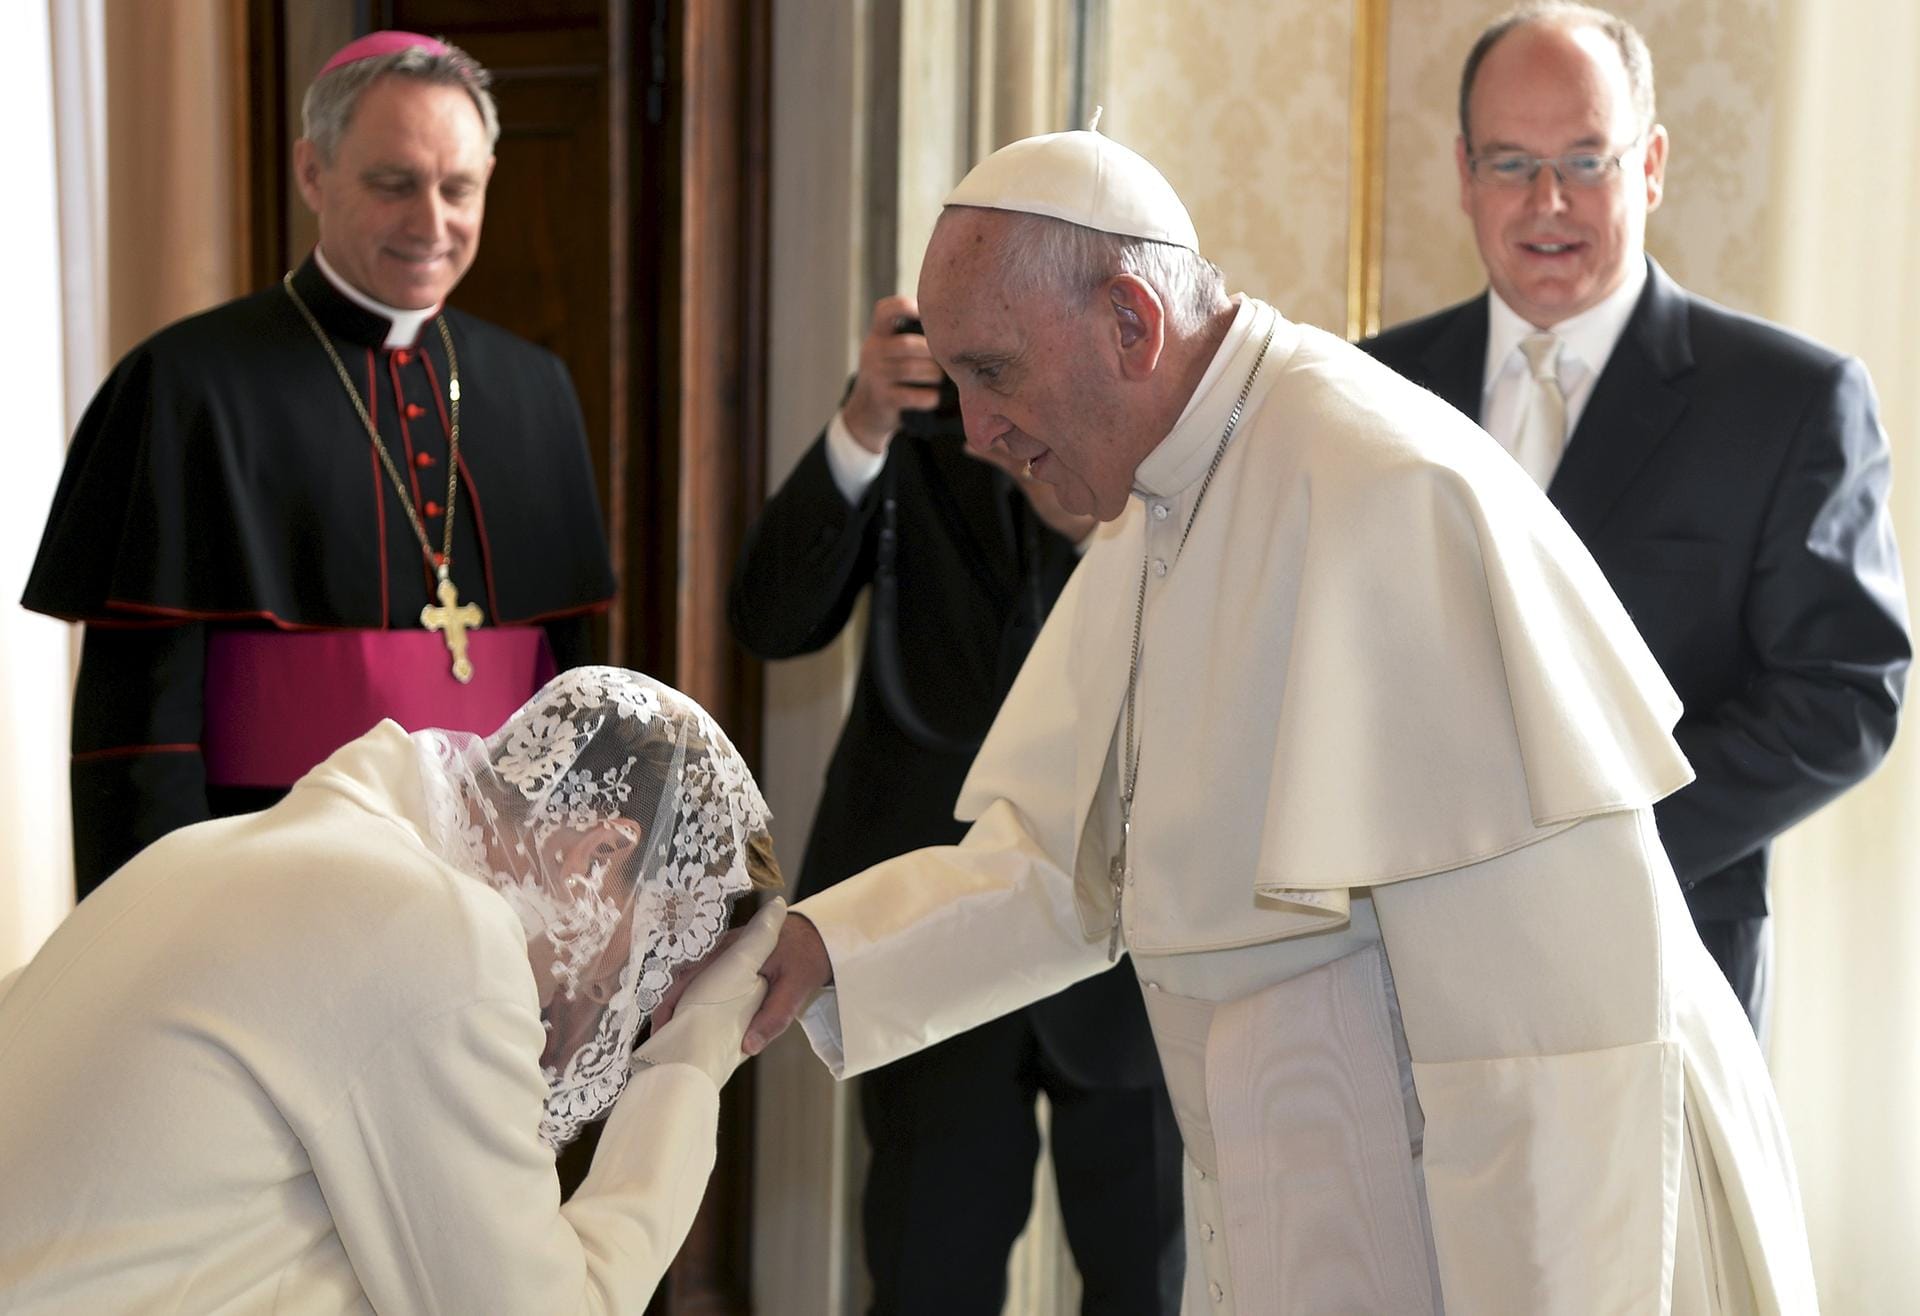 Charlène küsst die Hand des Papstes.